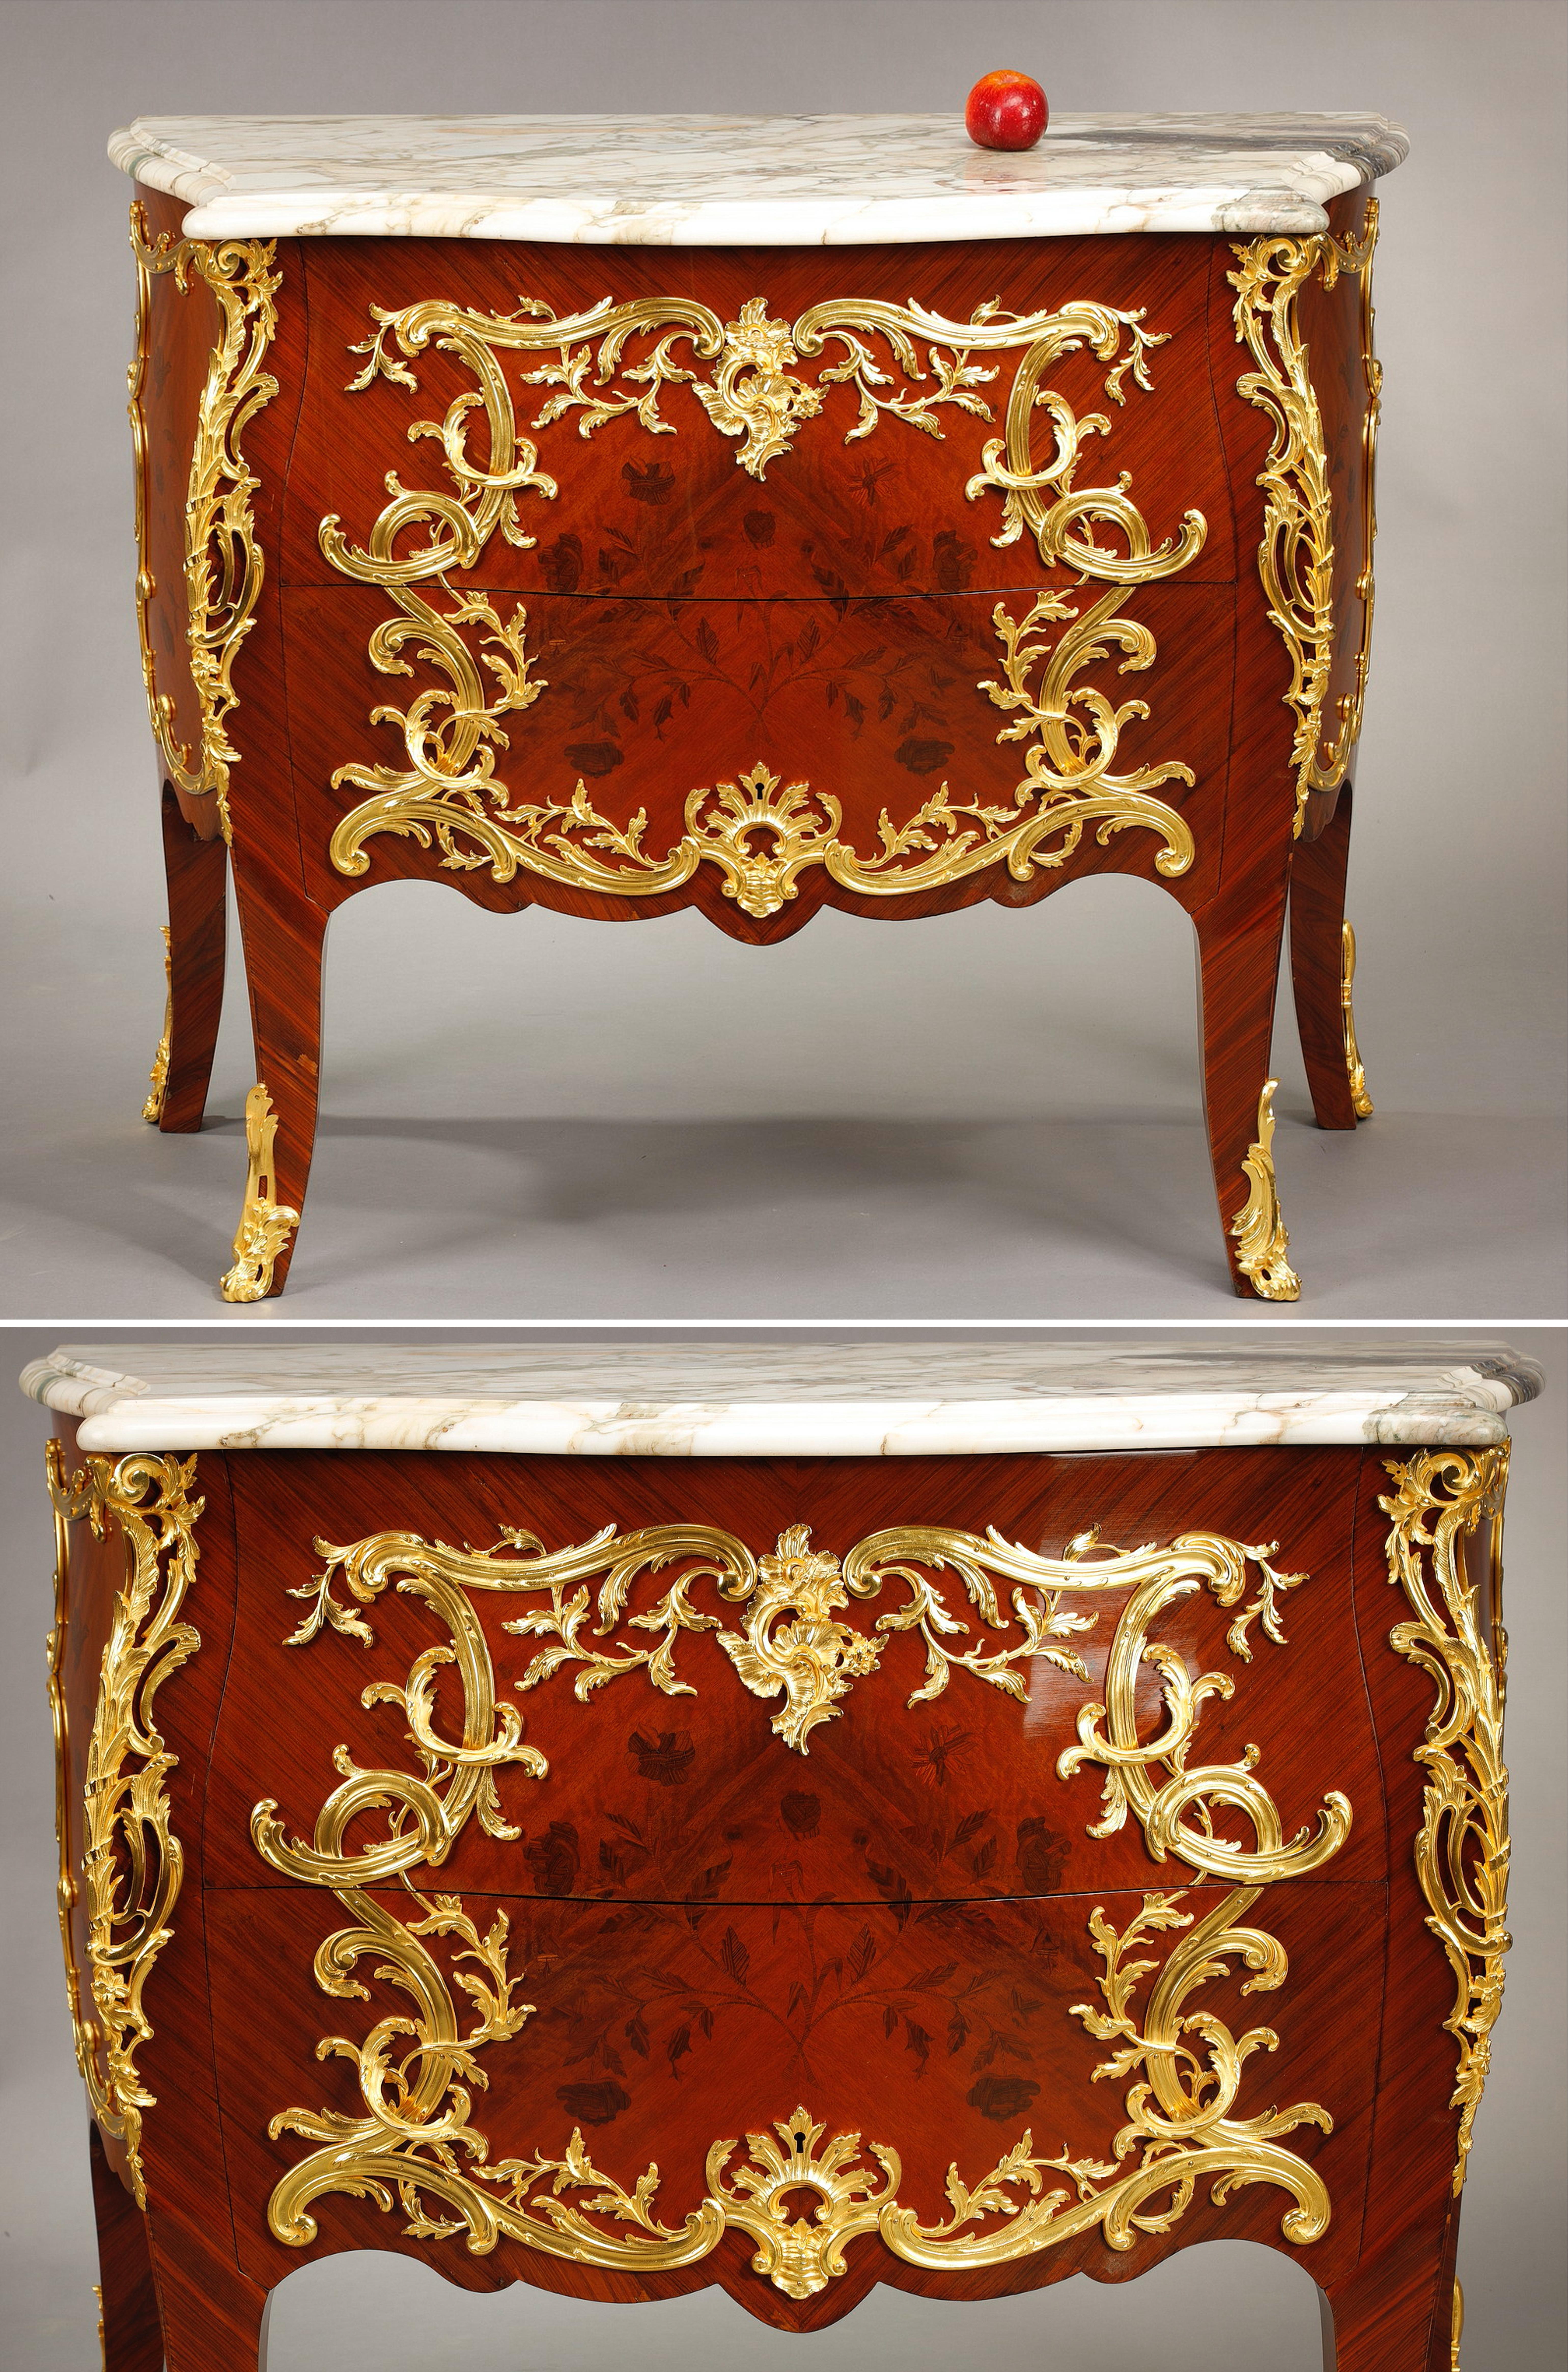 Kommode im Stil Louis XV mit Holzeinlegearbeiten, verziert mit vergoldeten Bronzen. Er ist mit Intarsien aus Zweigen und Blumen aus verschiedenen Hölzern verziert, die in vergoldete Bronze-Rocaillekartuschen eingefasst sind. Die Pfosten werden durch